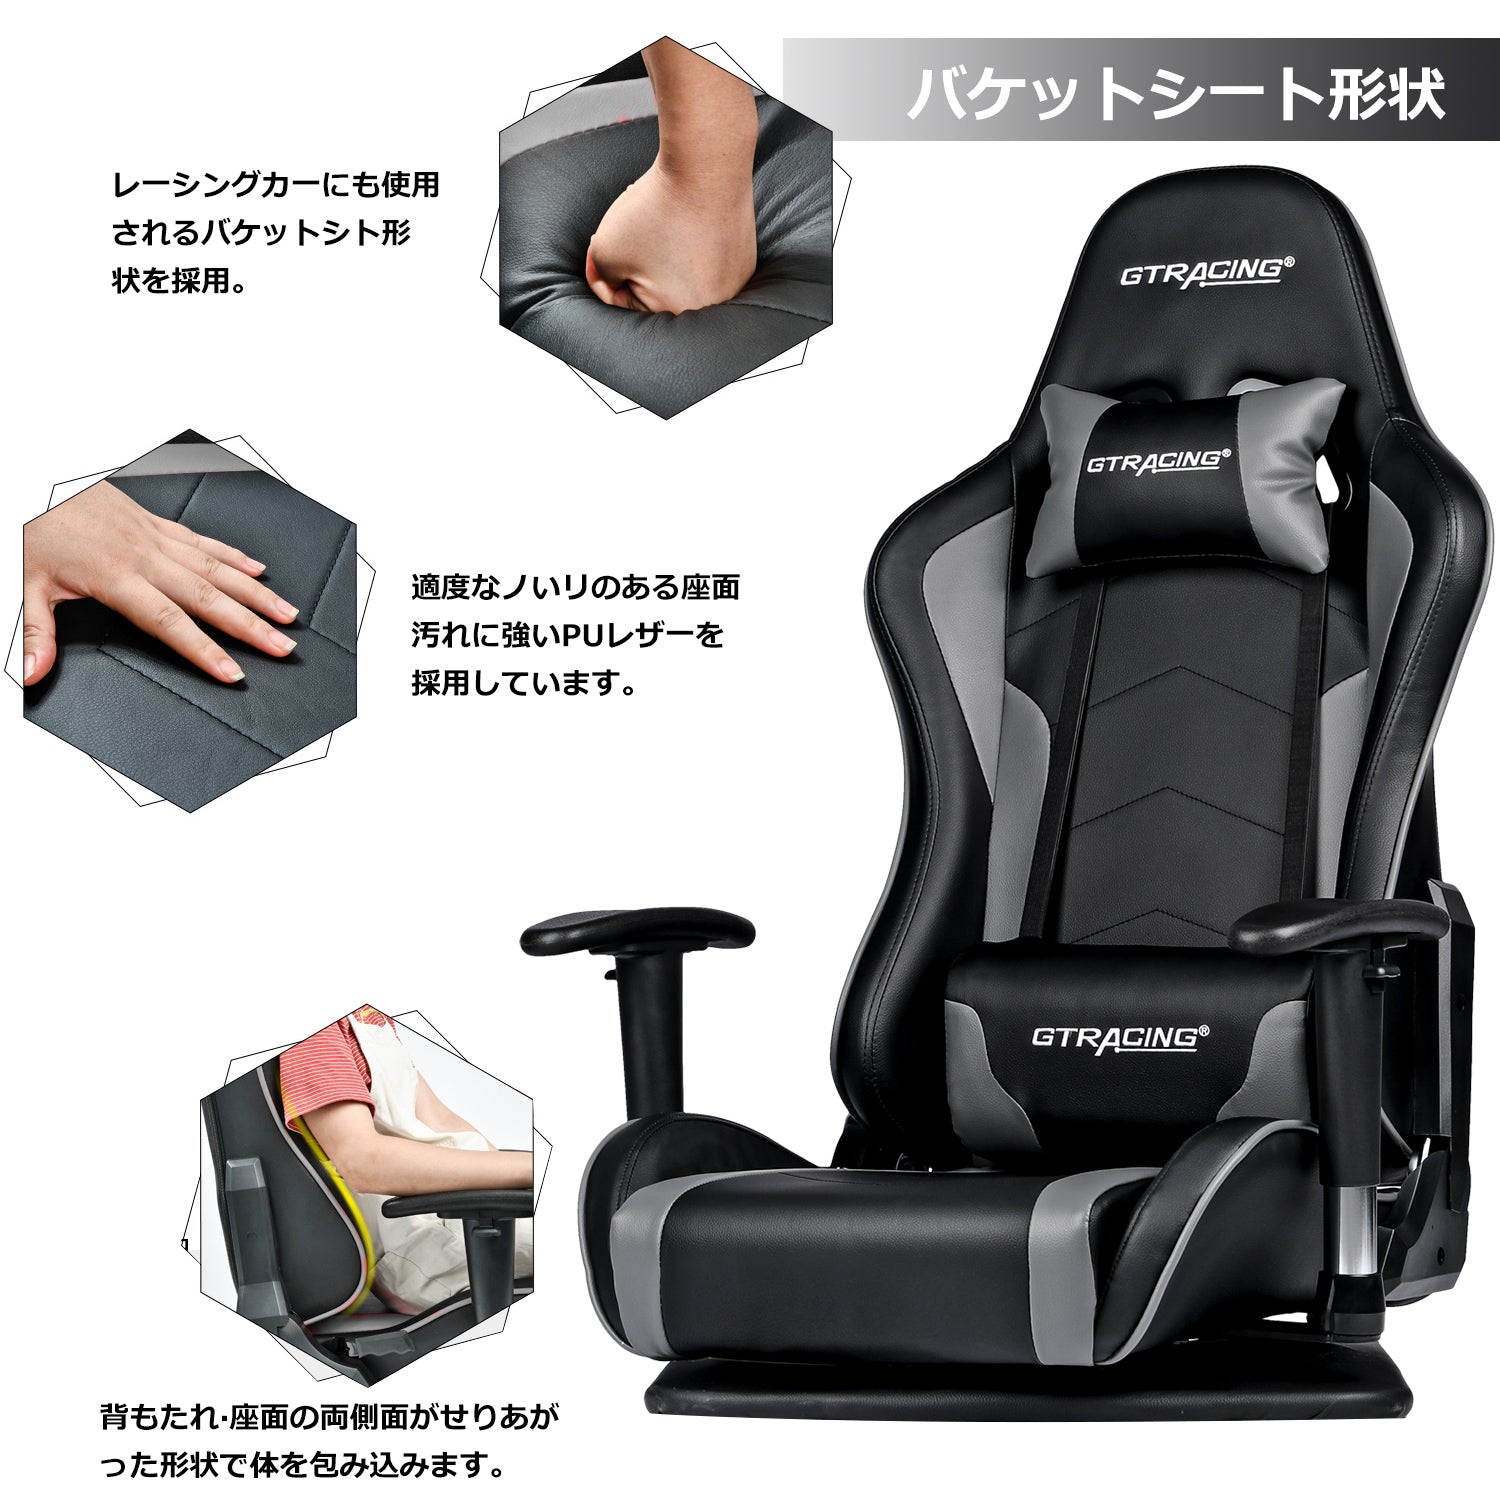 贅沢 シリーズ // ゲーミング座椅子 GT89